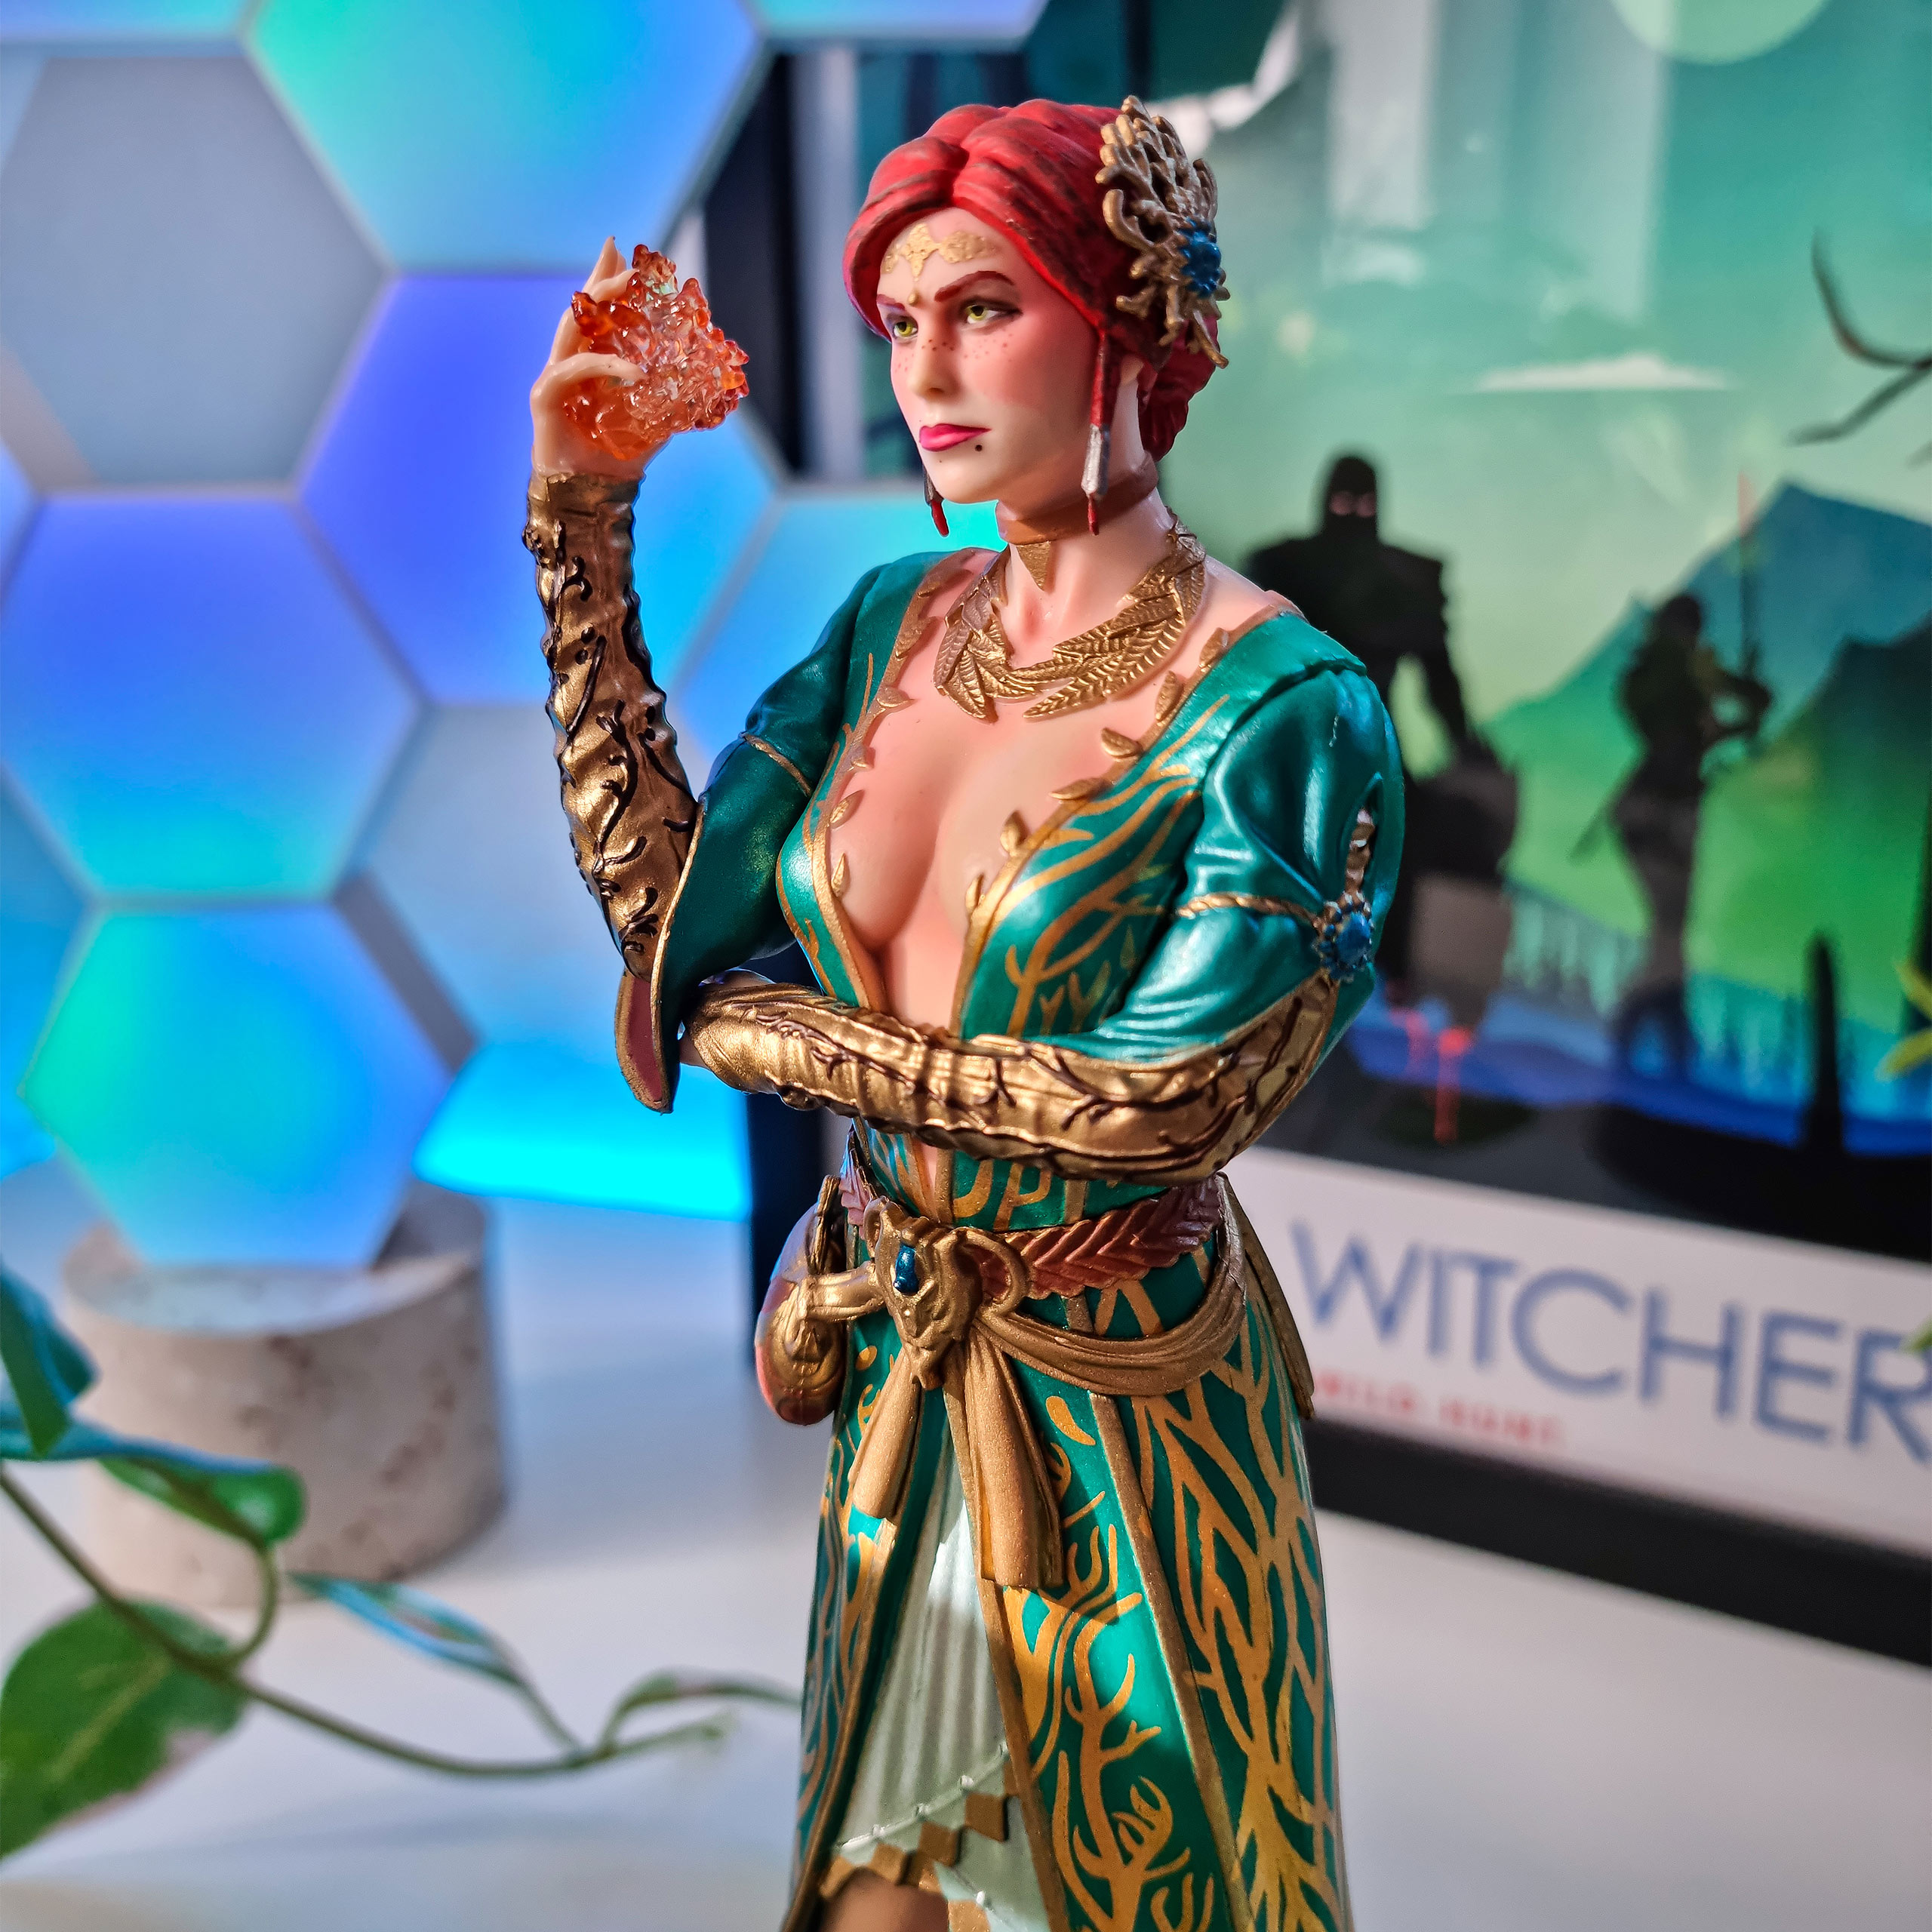 Witcher 3 - Triss Merigold Standbeeld